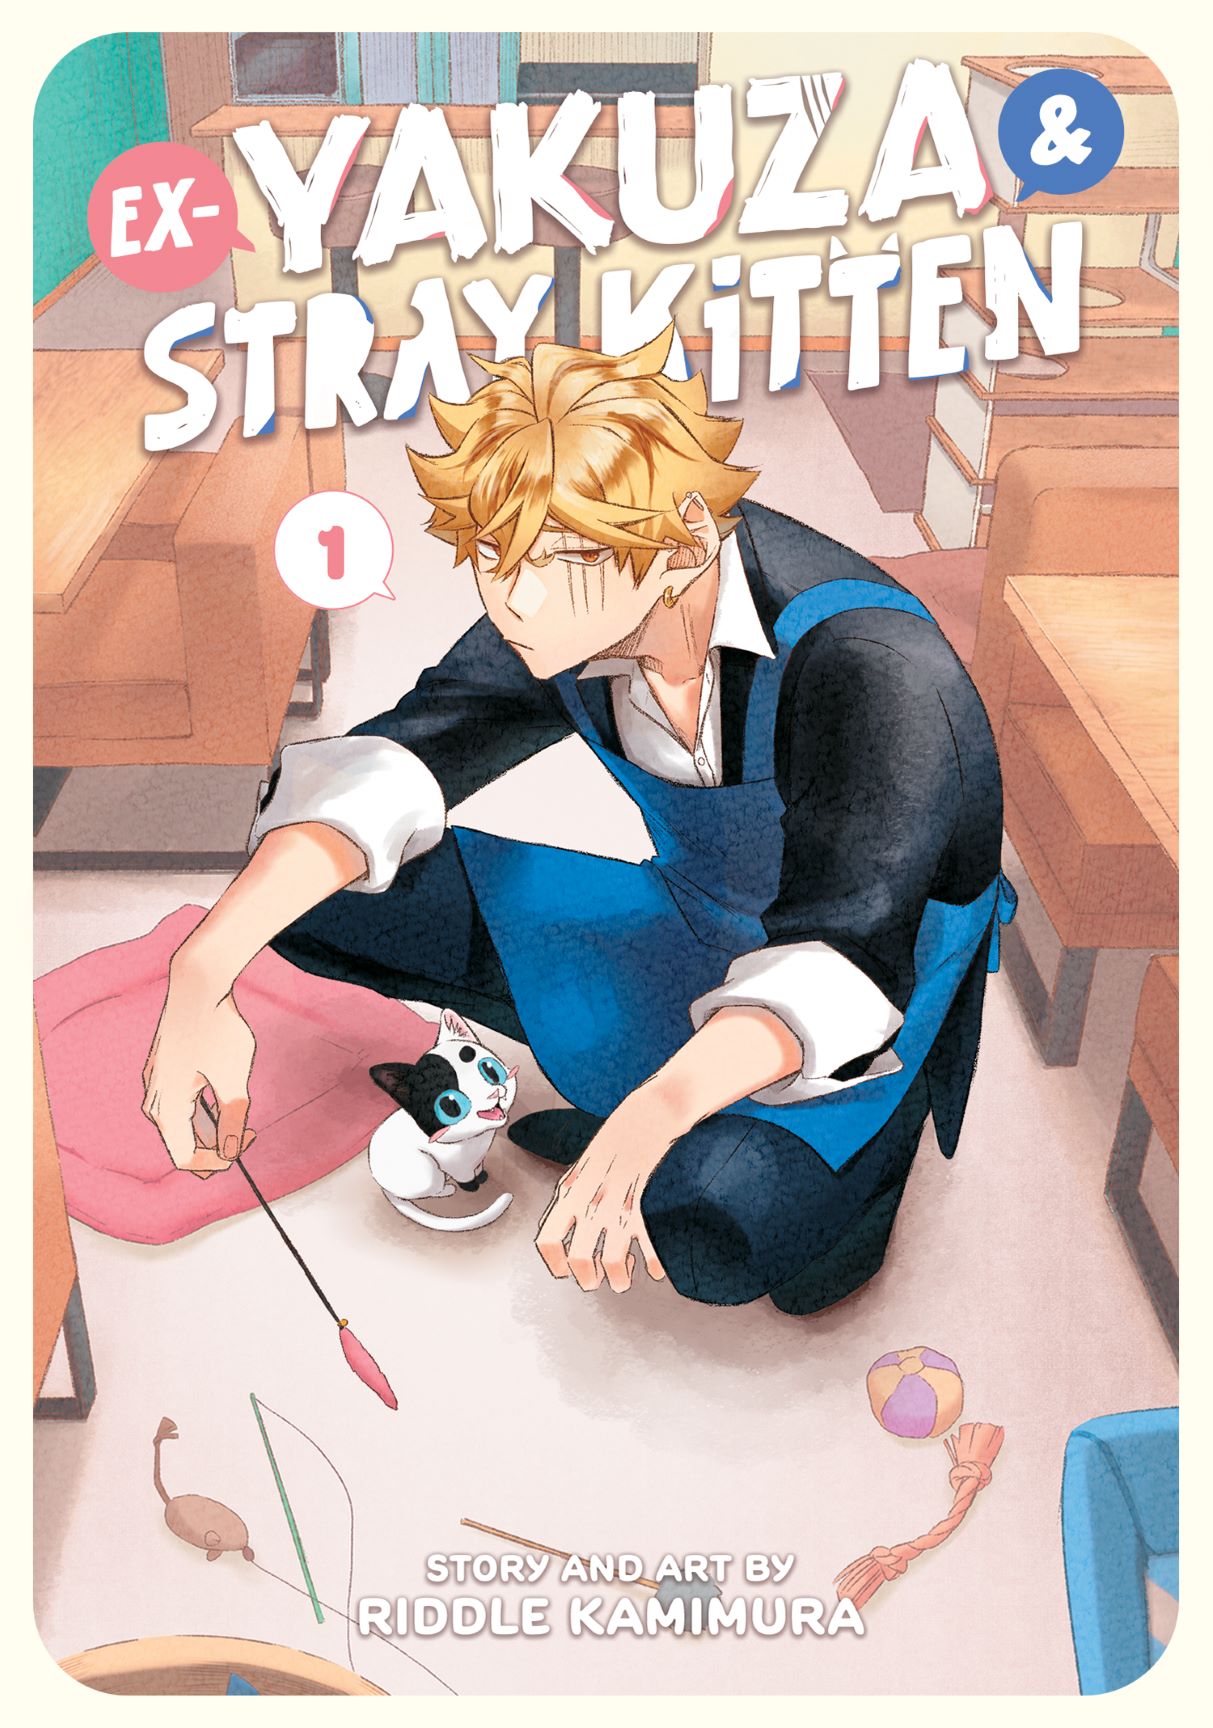 Ex Yakuza & Stray Kitten Manga Volume 1